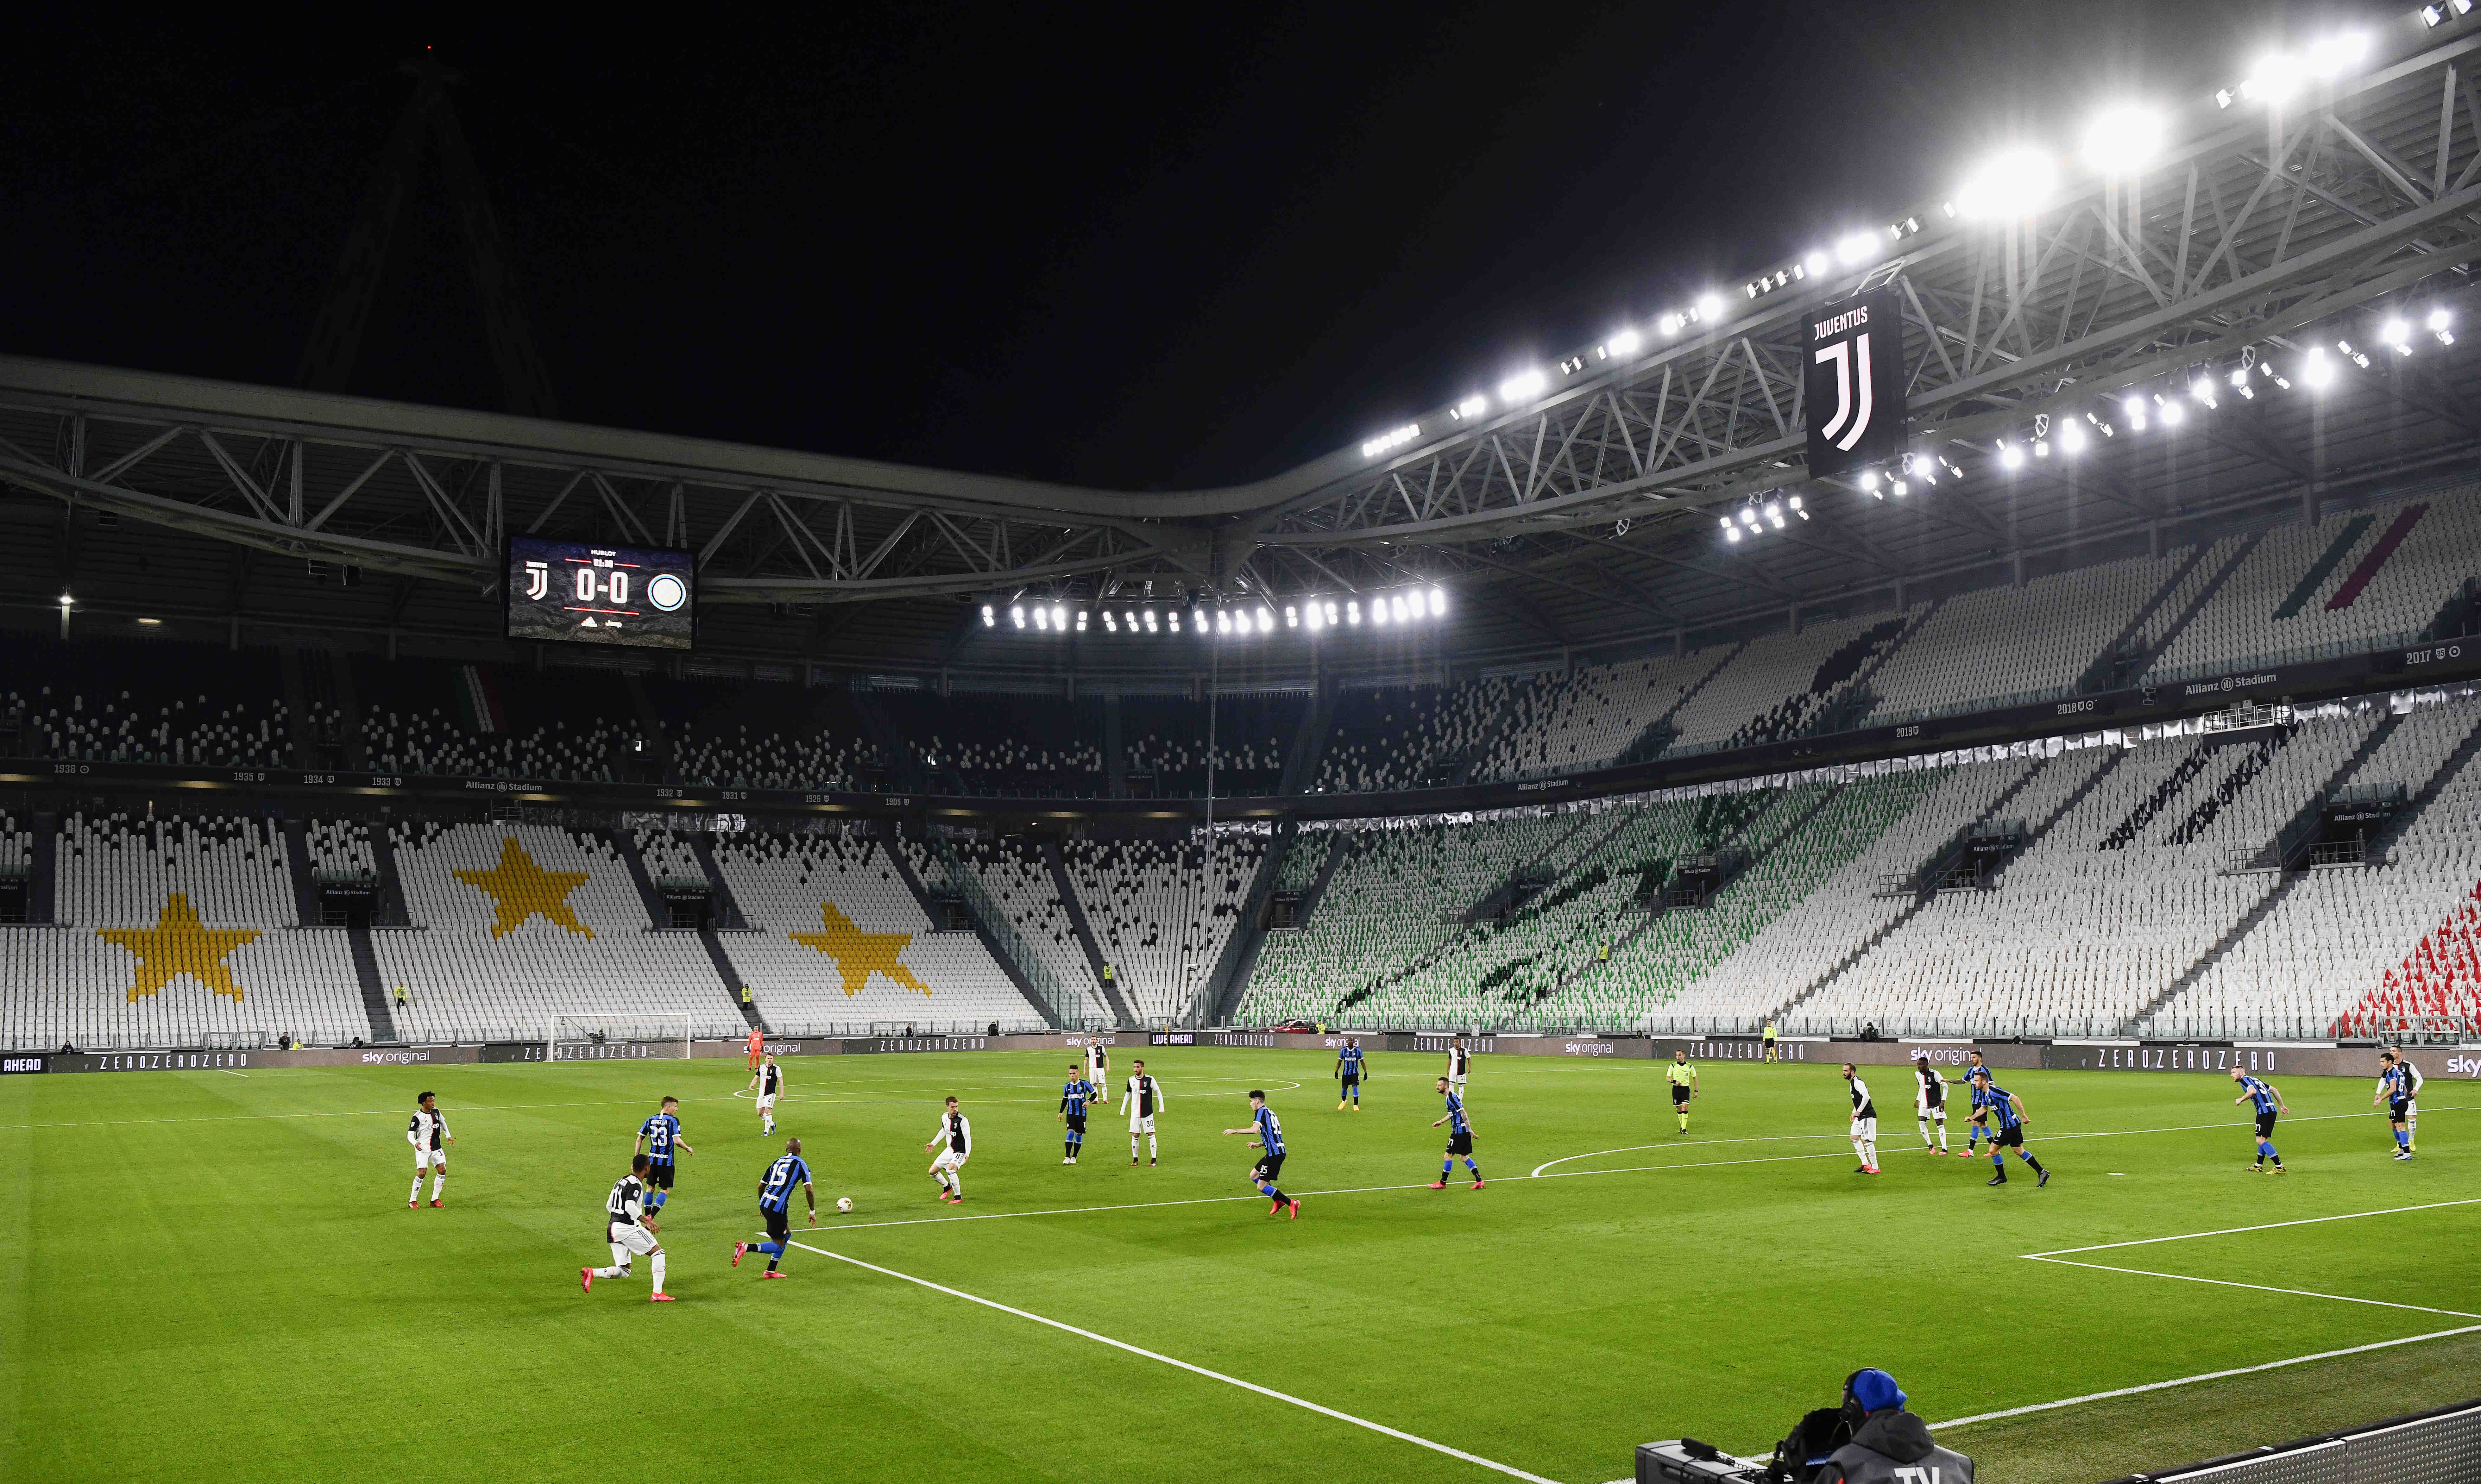 Momentka zo šlágra Serie A medzi Juventusom a Interom v Turíne 8. marca 2020.